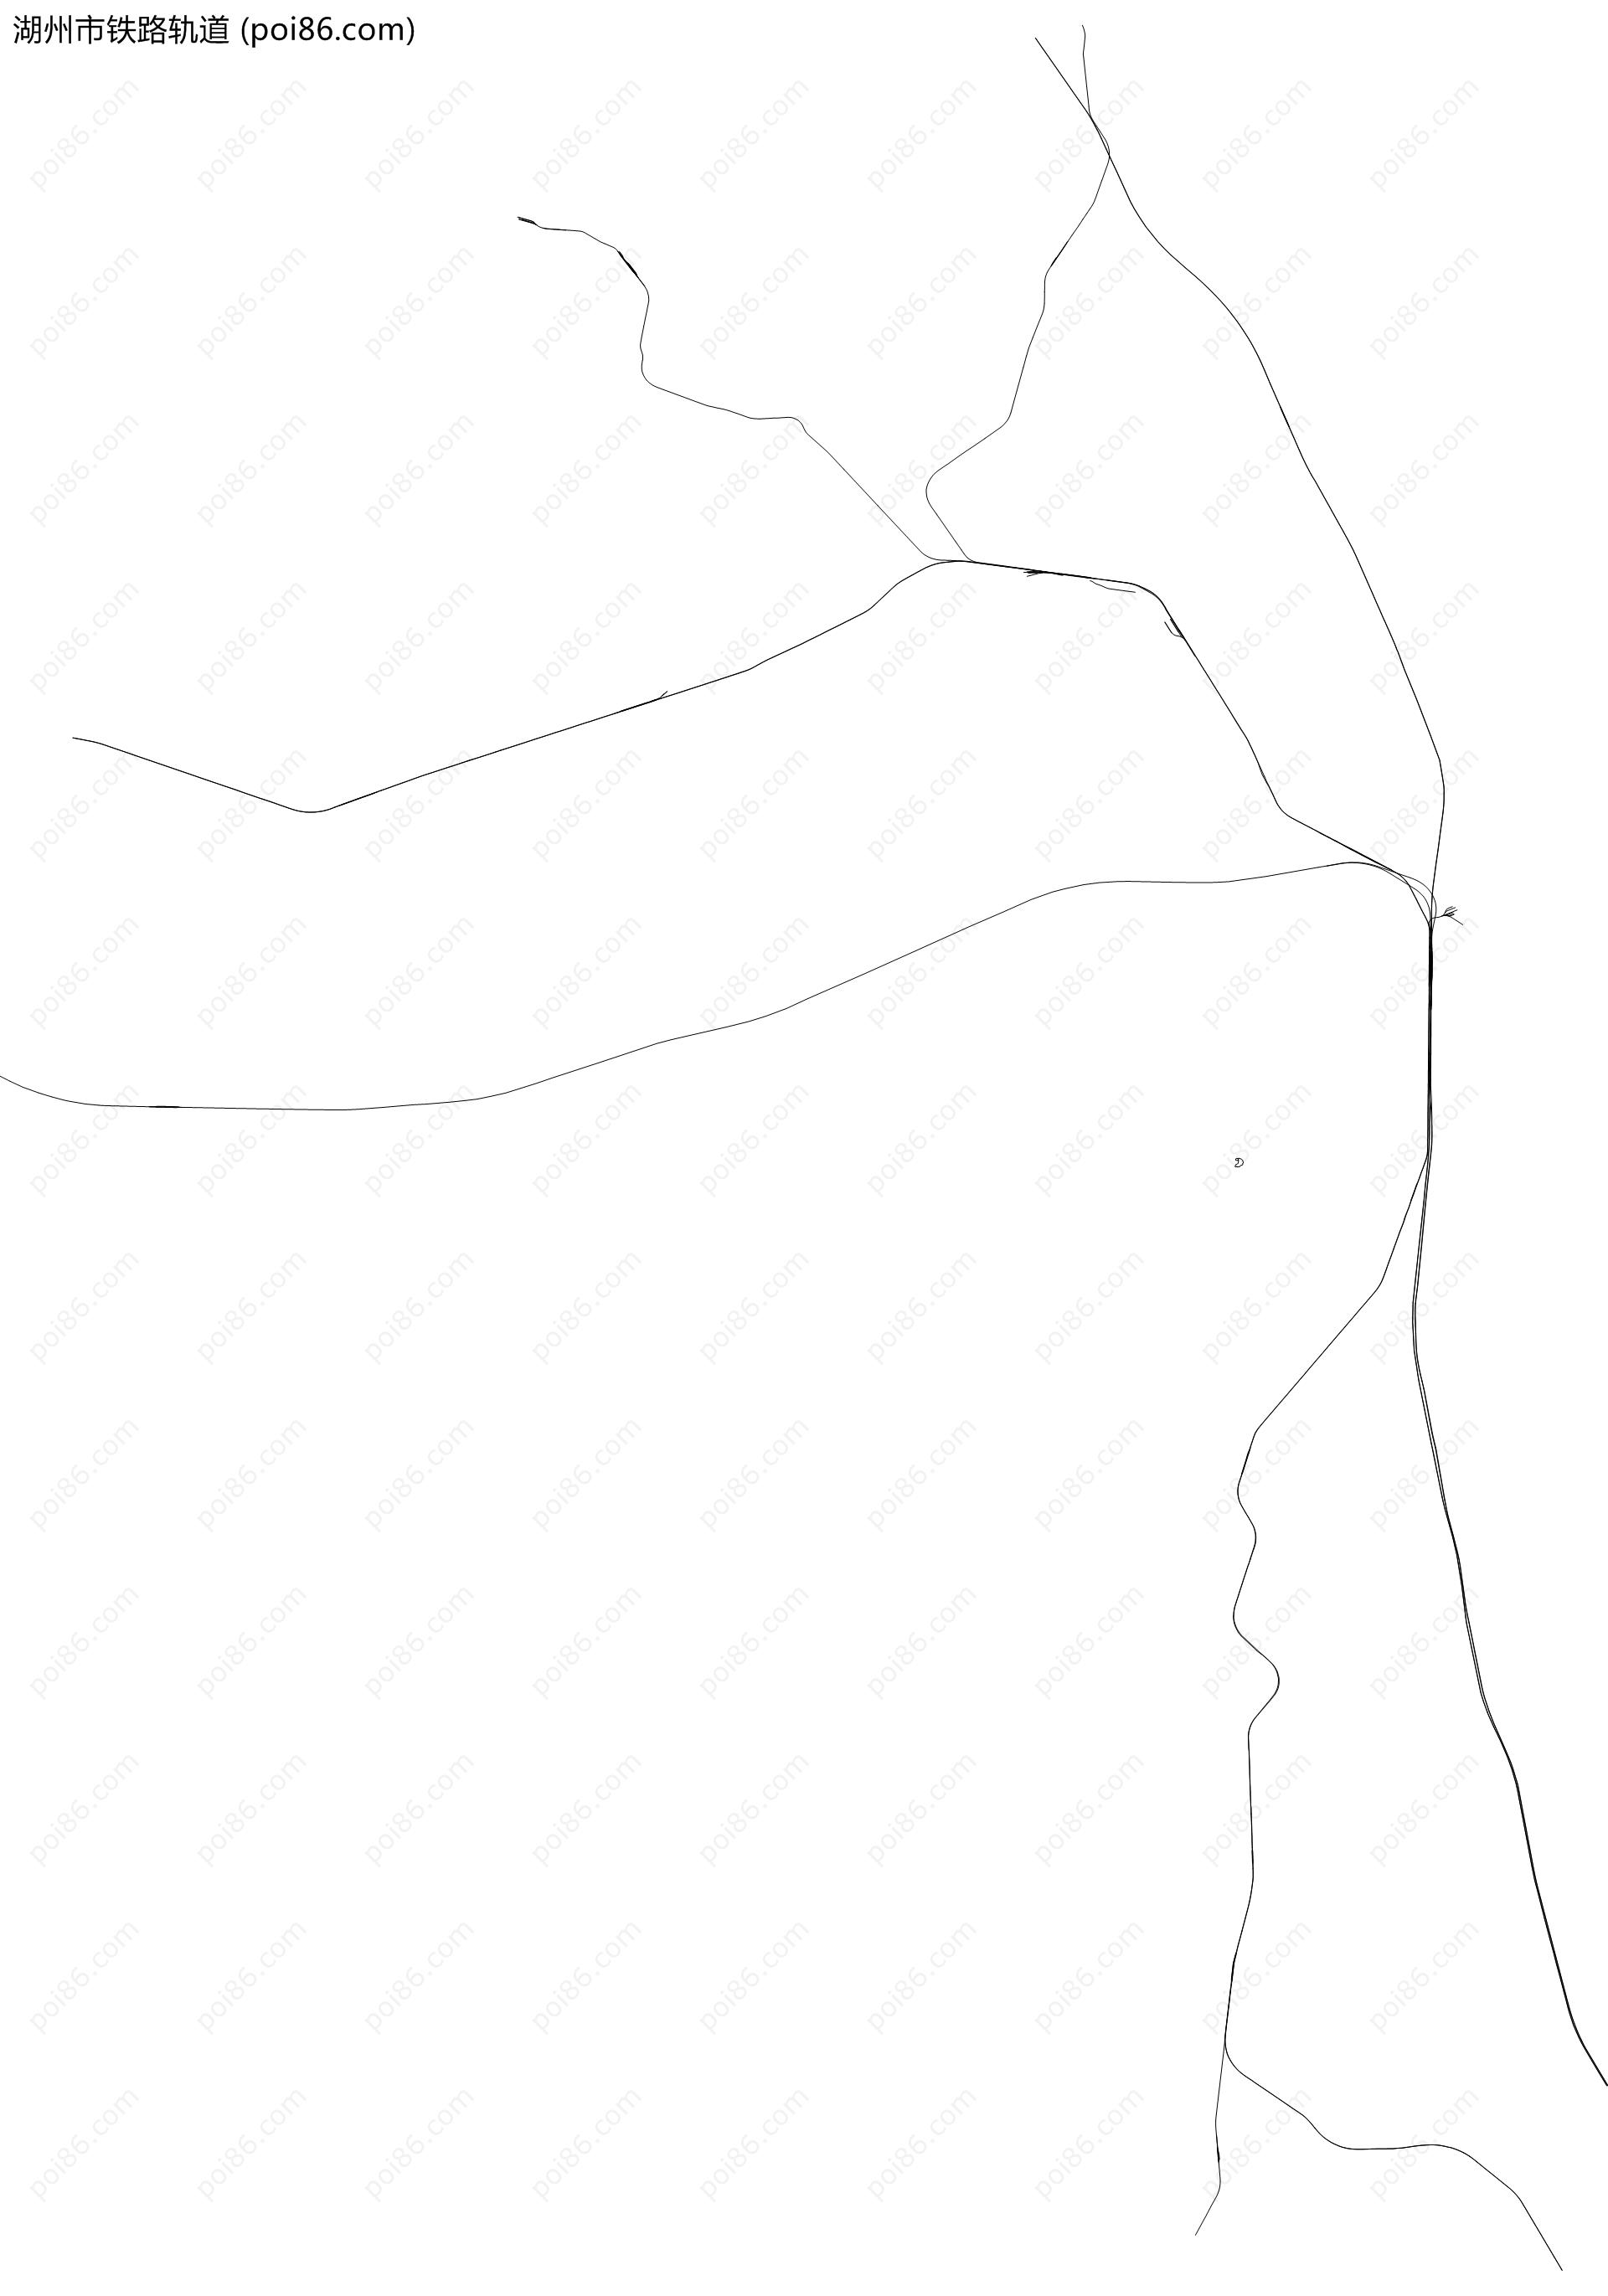 湖州市铁路轨道地图